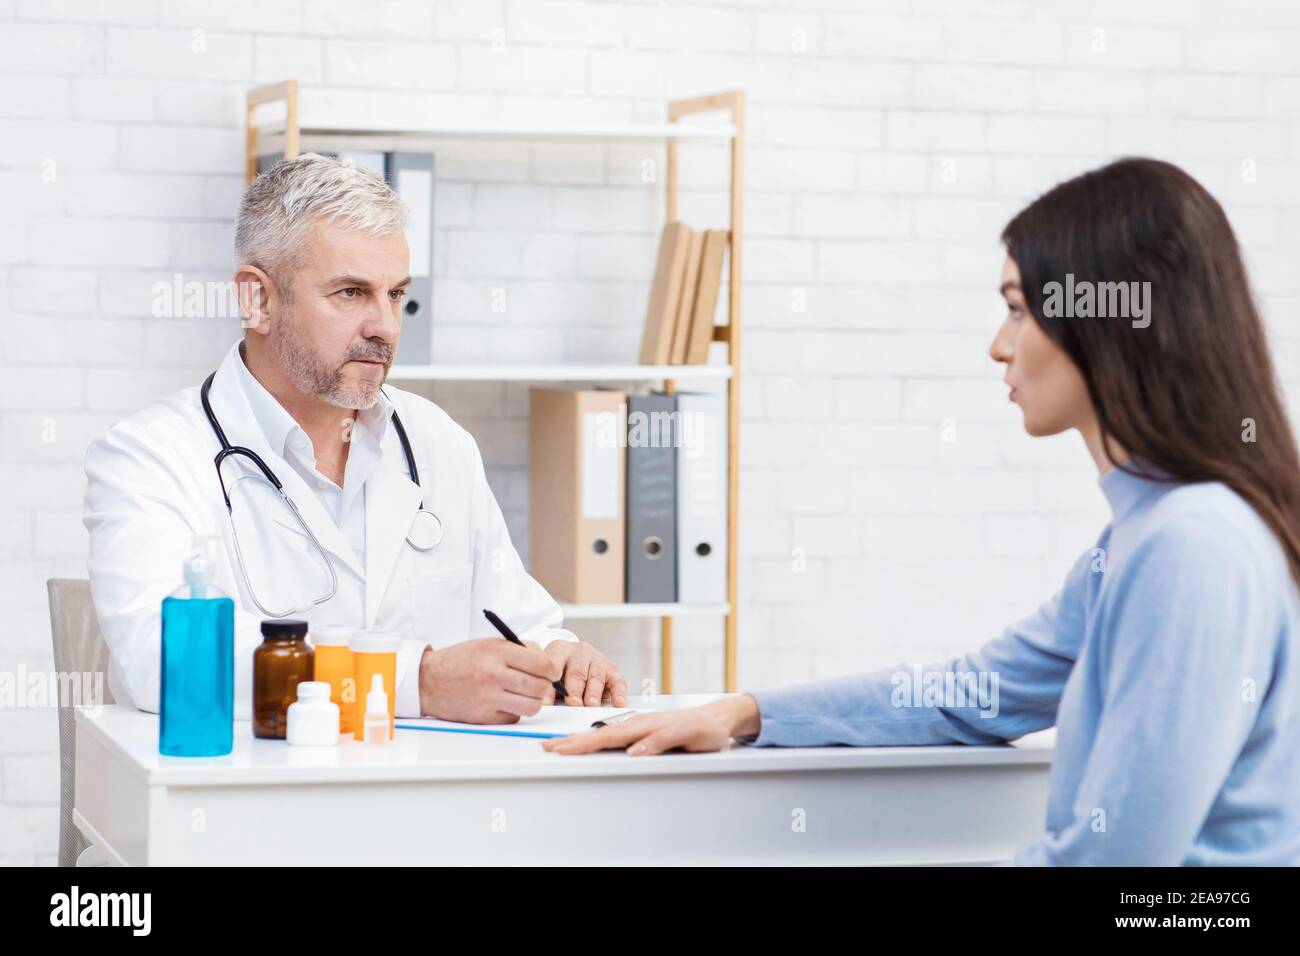 Un homme âgé sérieux, au pelage blanc, écoute la patiente et prend des notes à la table Banque D'Images